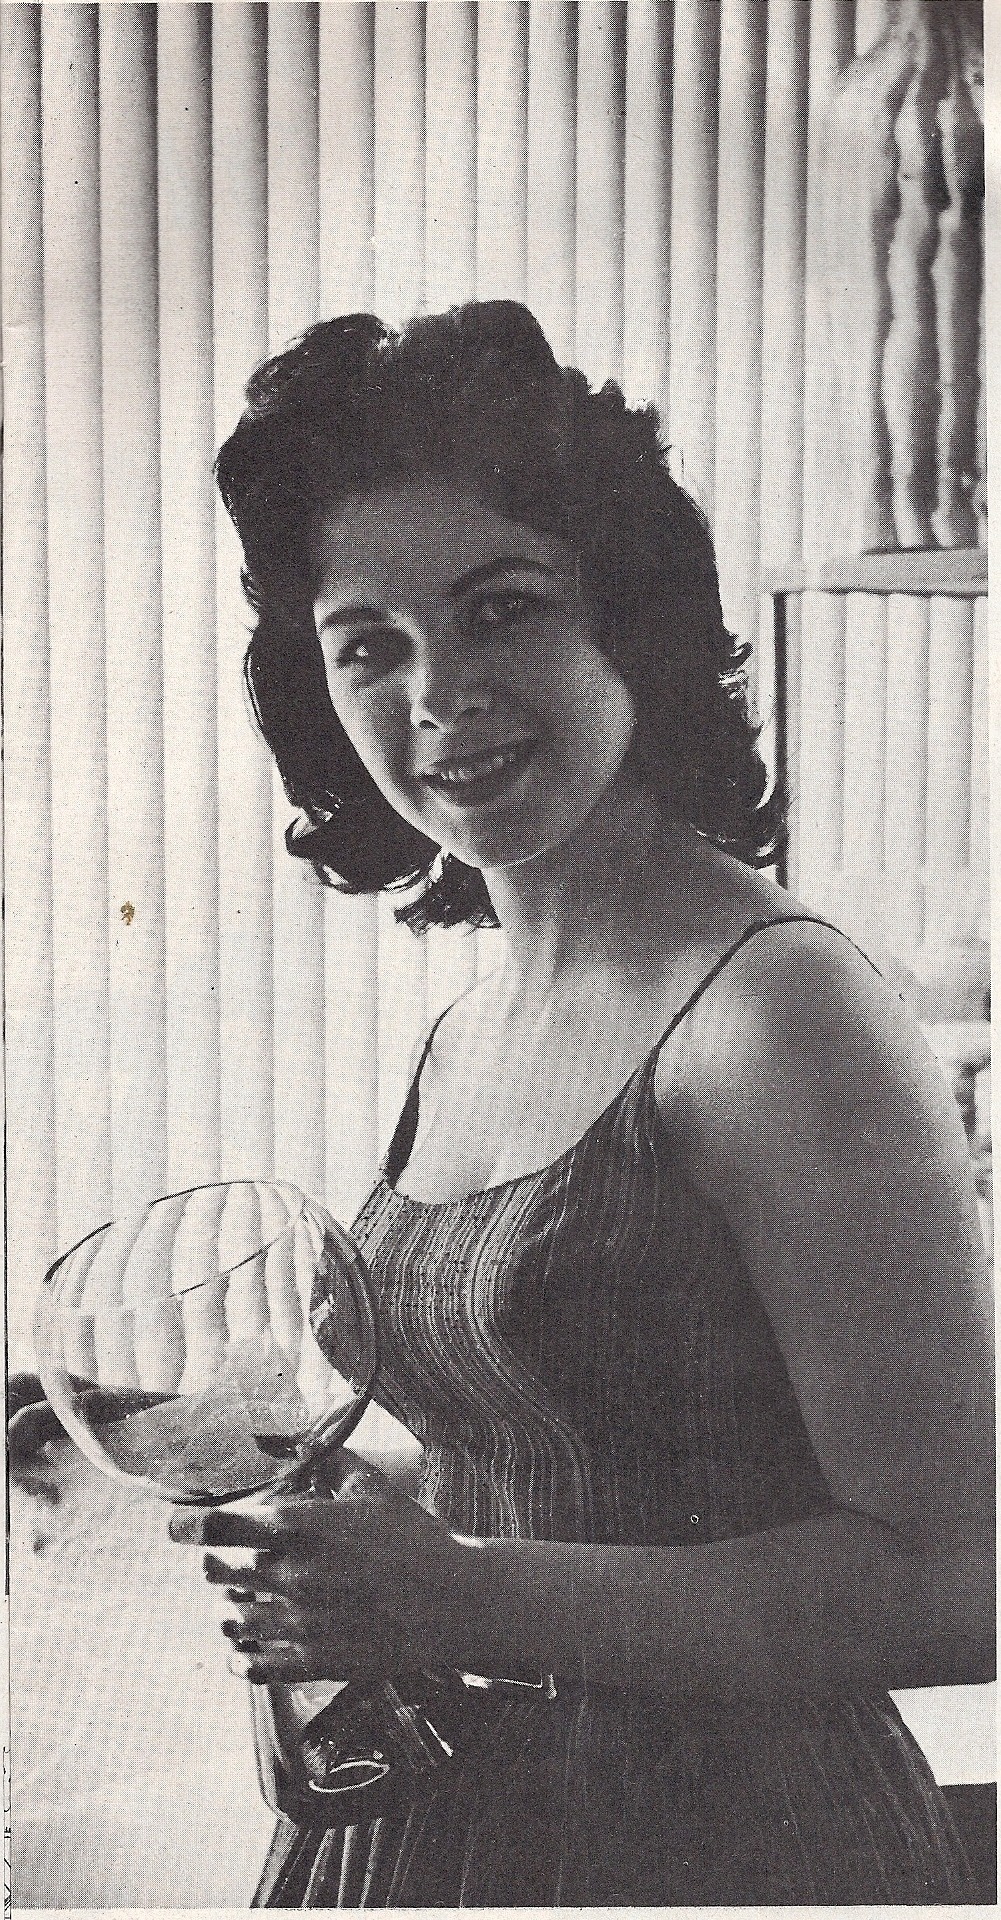 Dawn Wilder, Adam Volume 5 No 1 (1960)